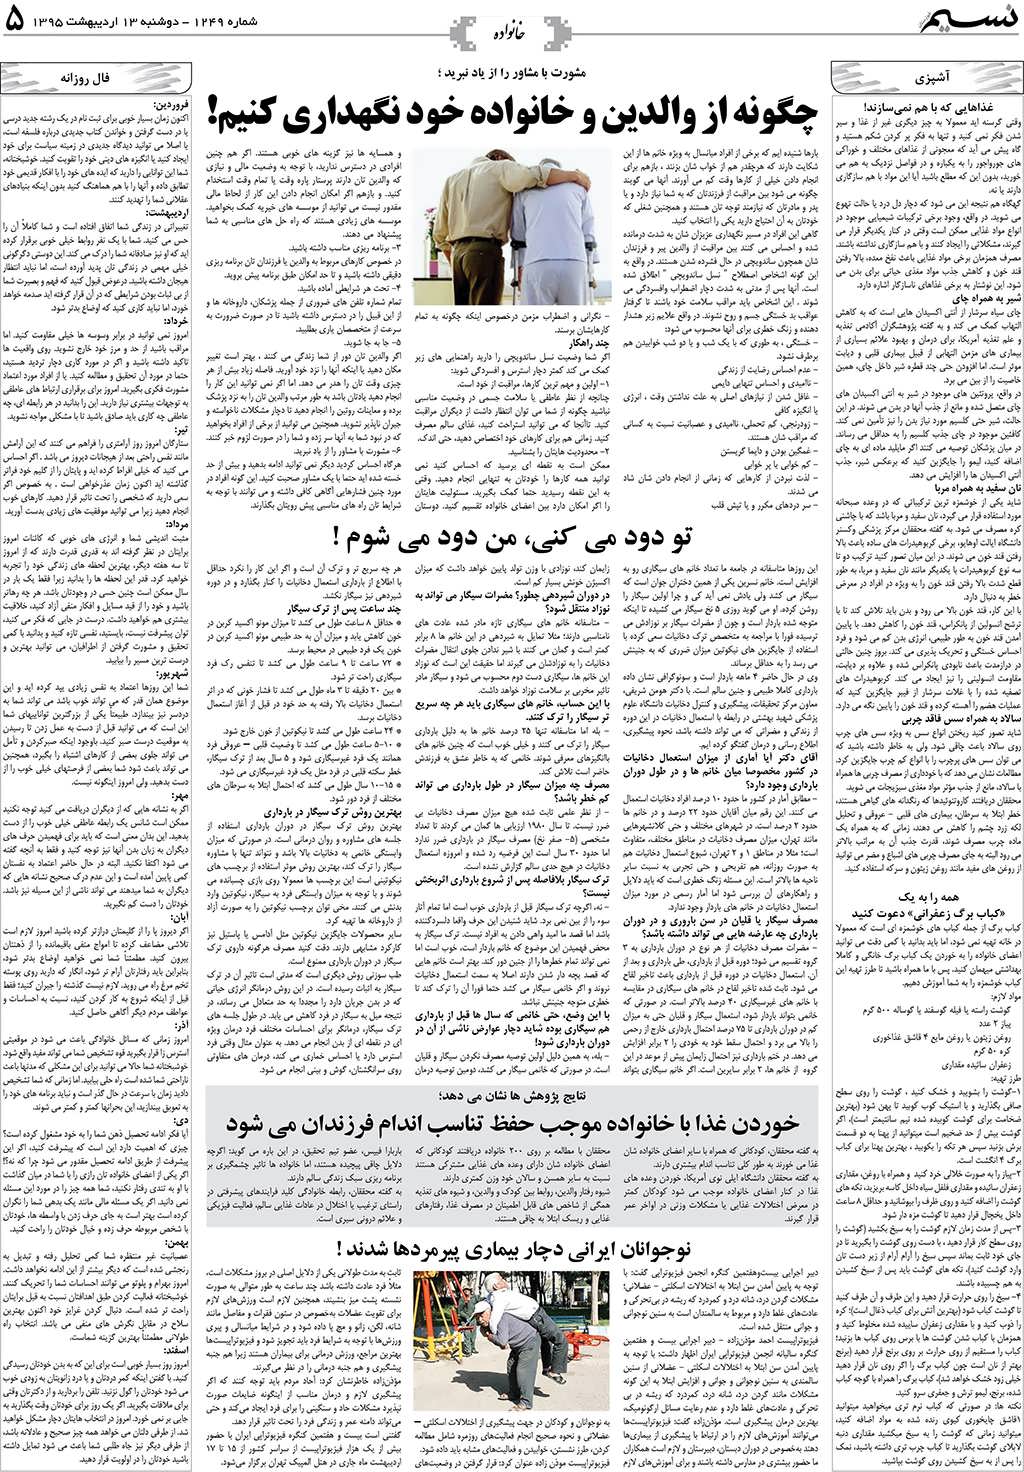 صفحه خانواده روزنامه نسیم شماره 1249